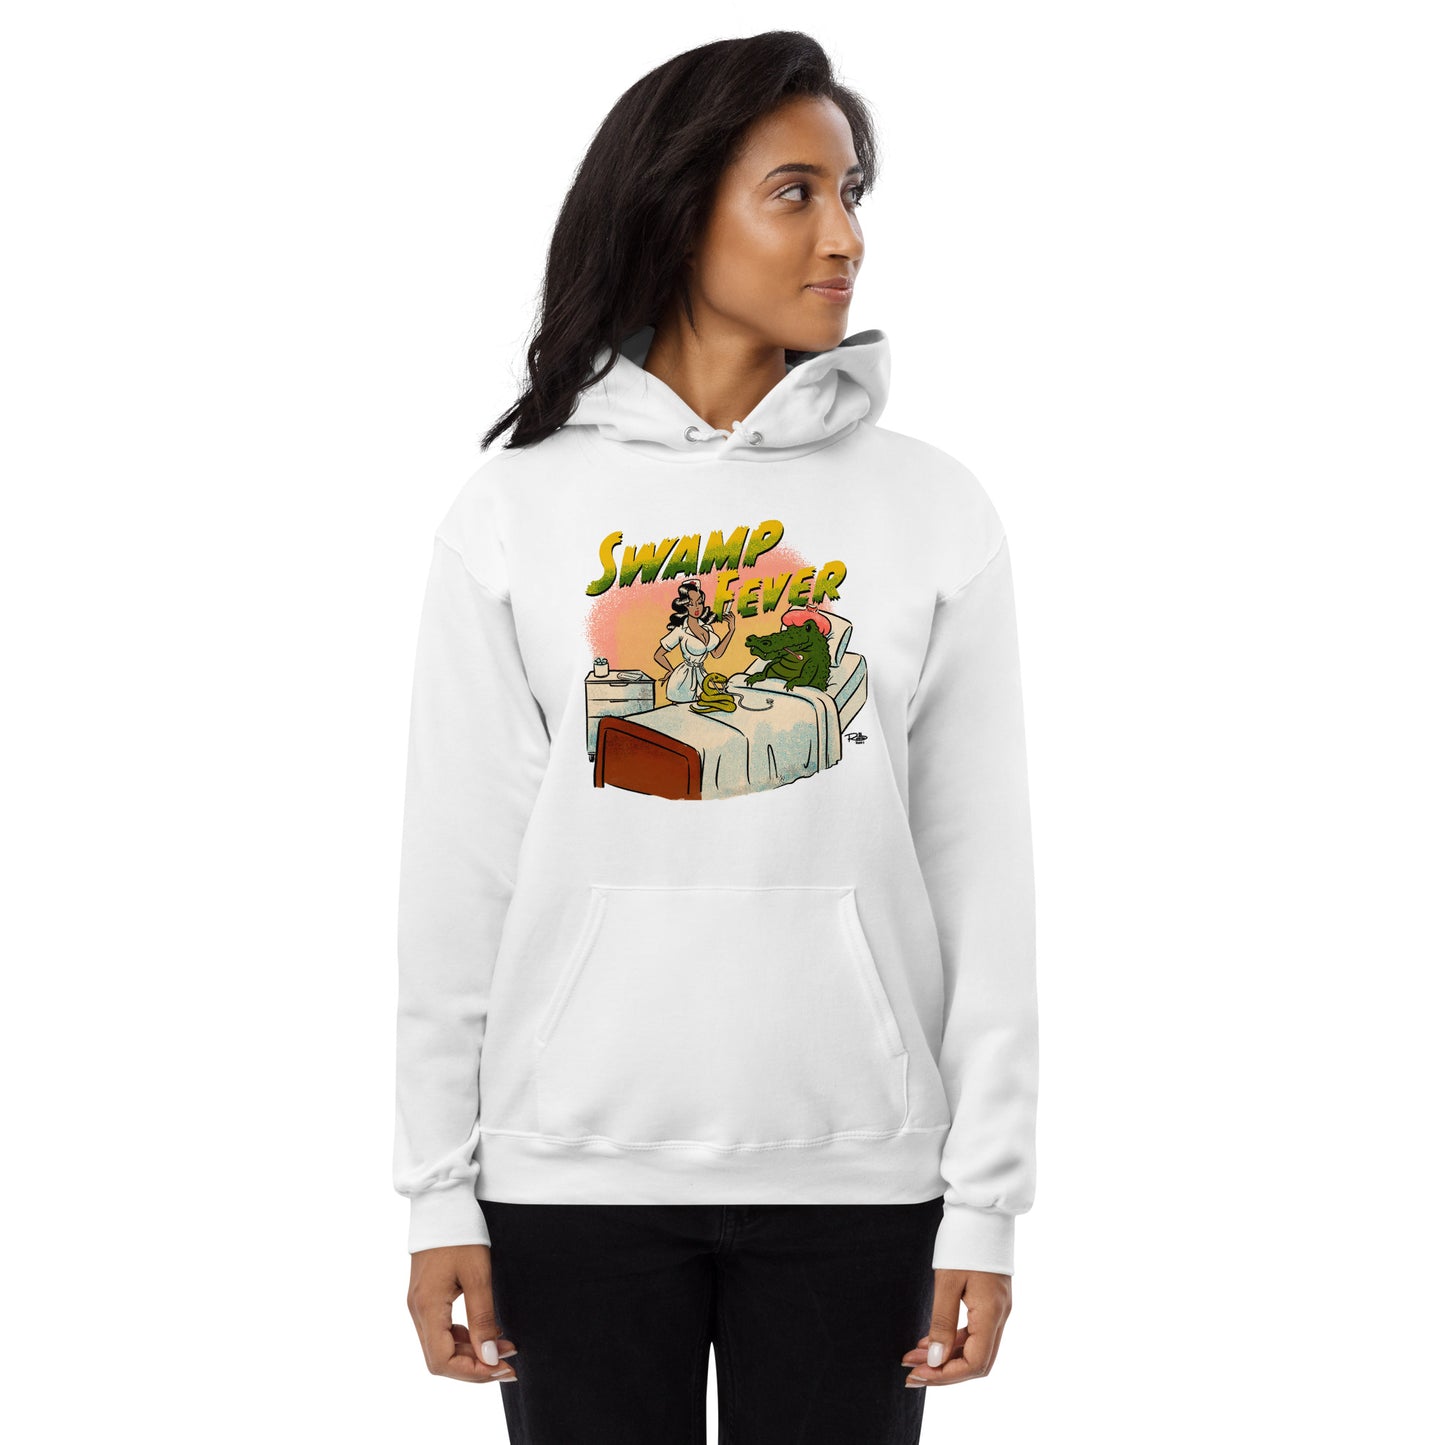 Sweet Tea Swamp Fever Unisex fleece hoodie